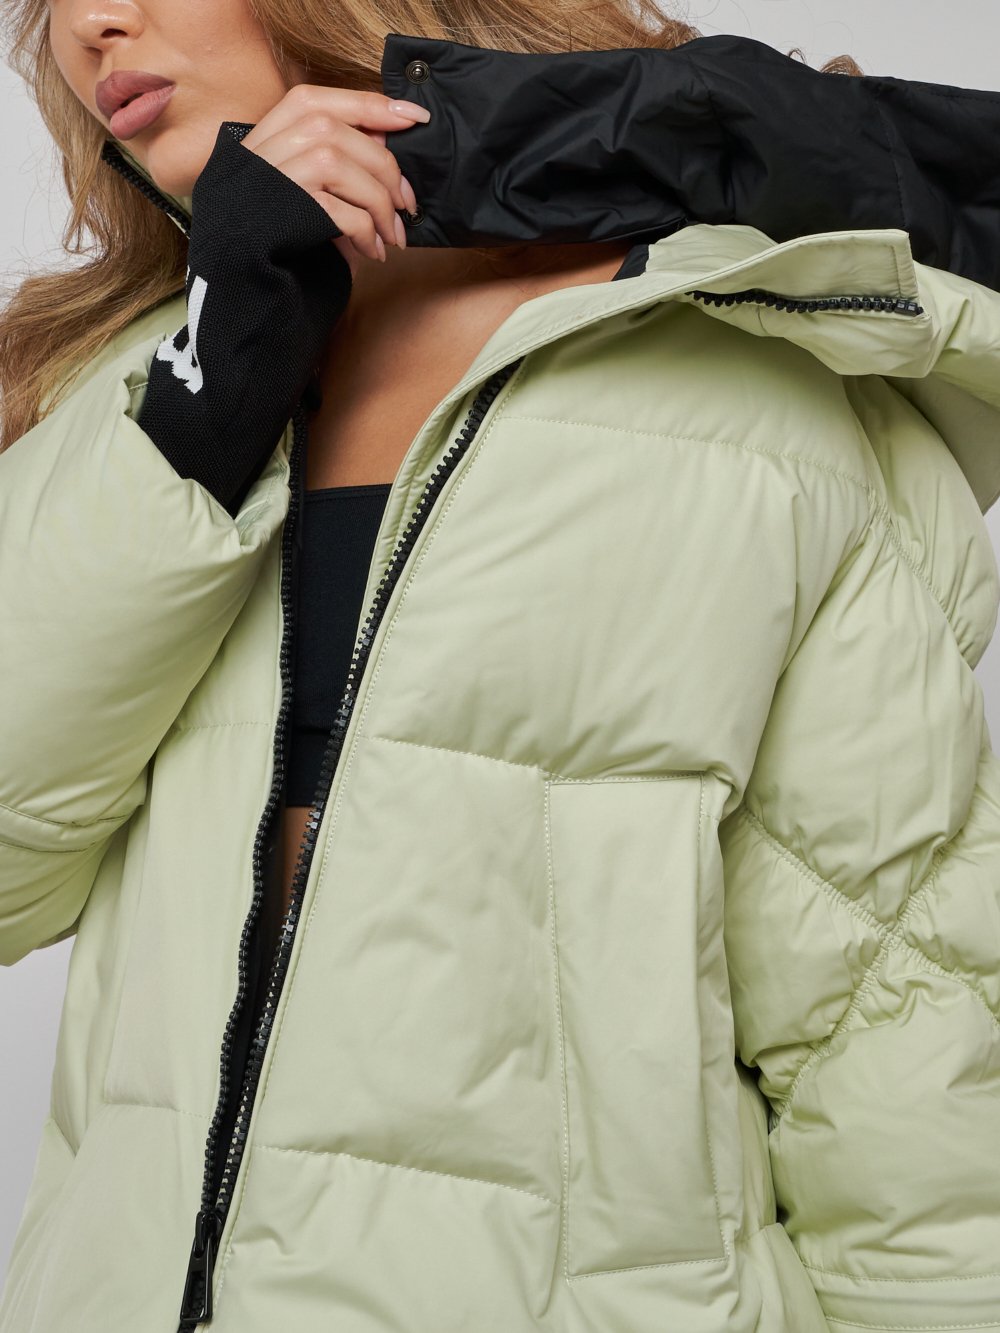 Купить куртку зимнюю оптом от производителя недорого в Москве 52306Sl 1